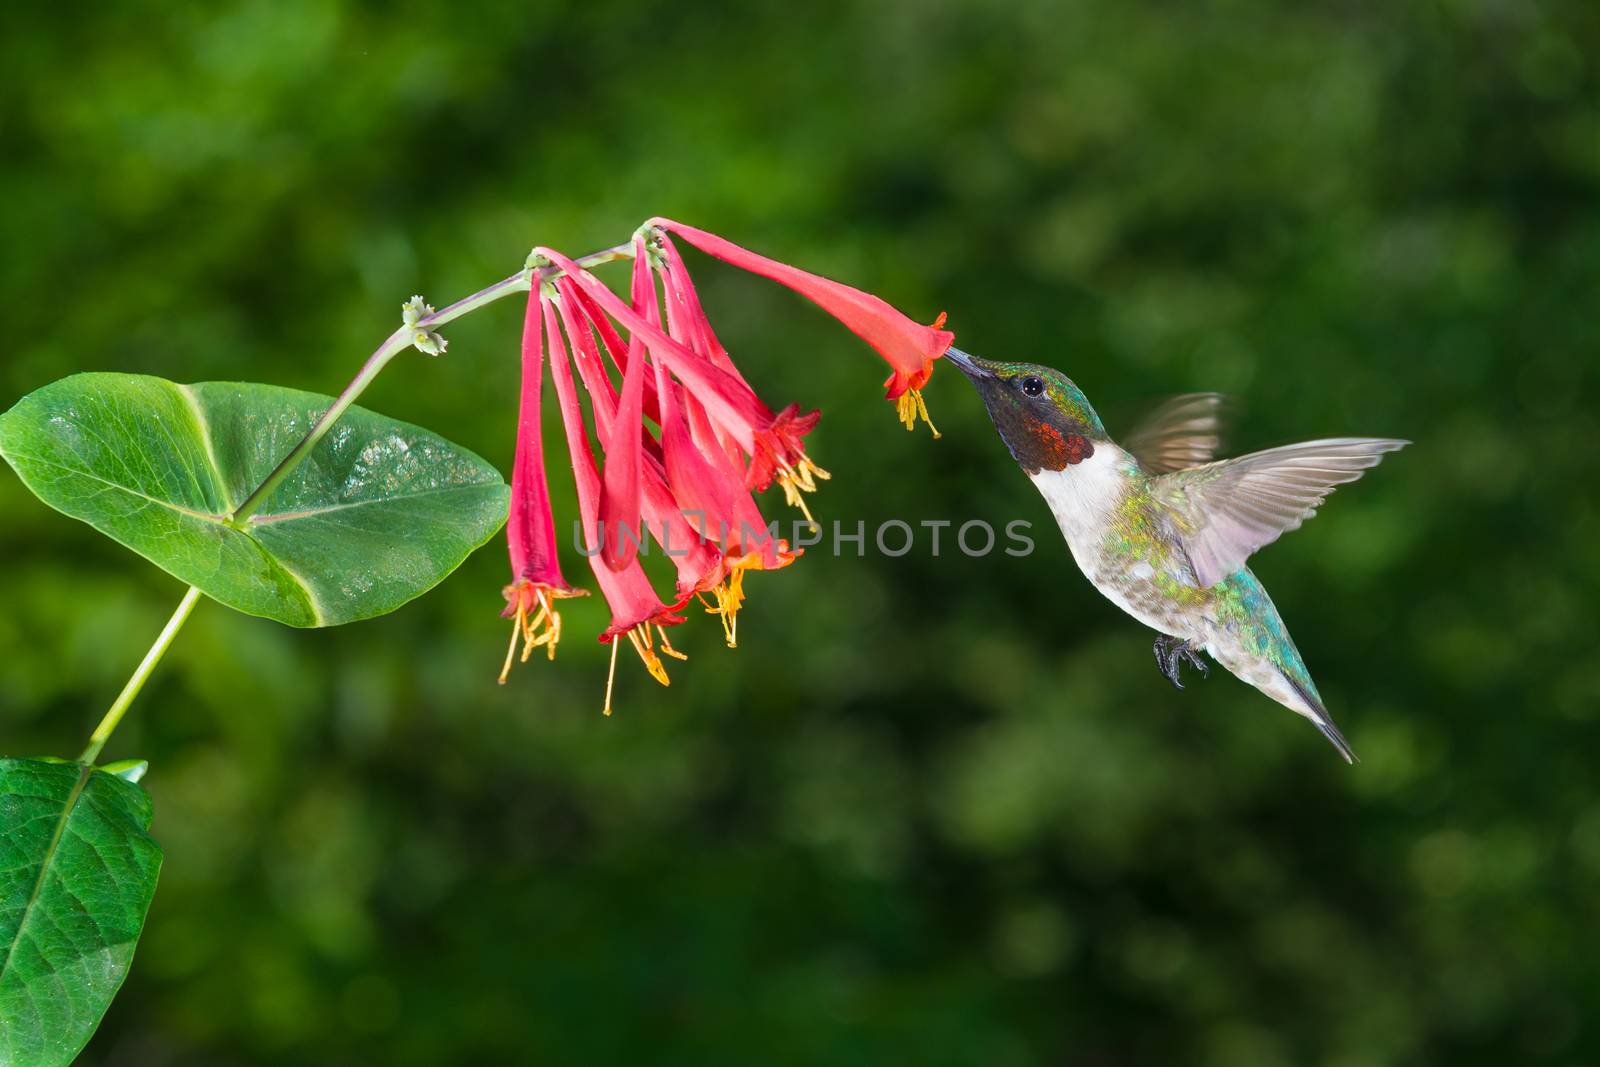 Male Ruby-Throated Hummingbird.